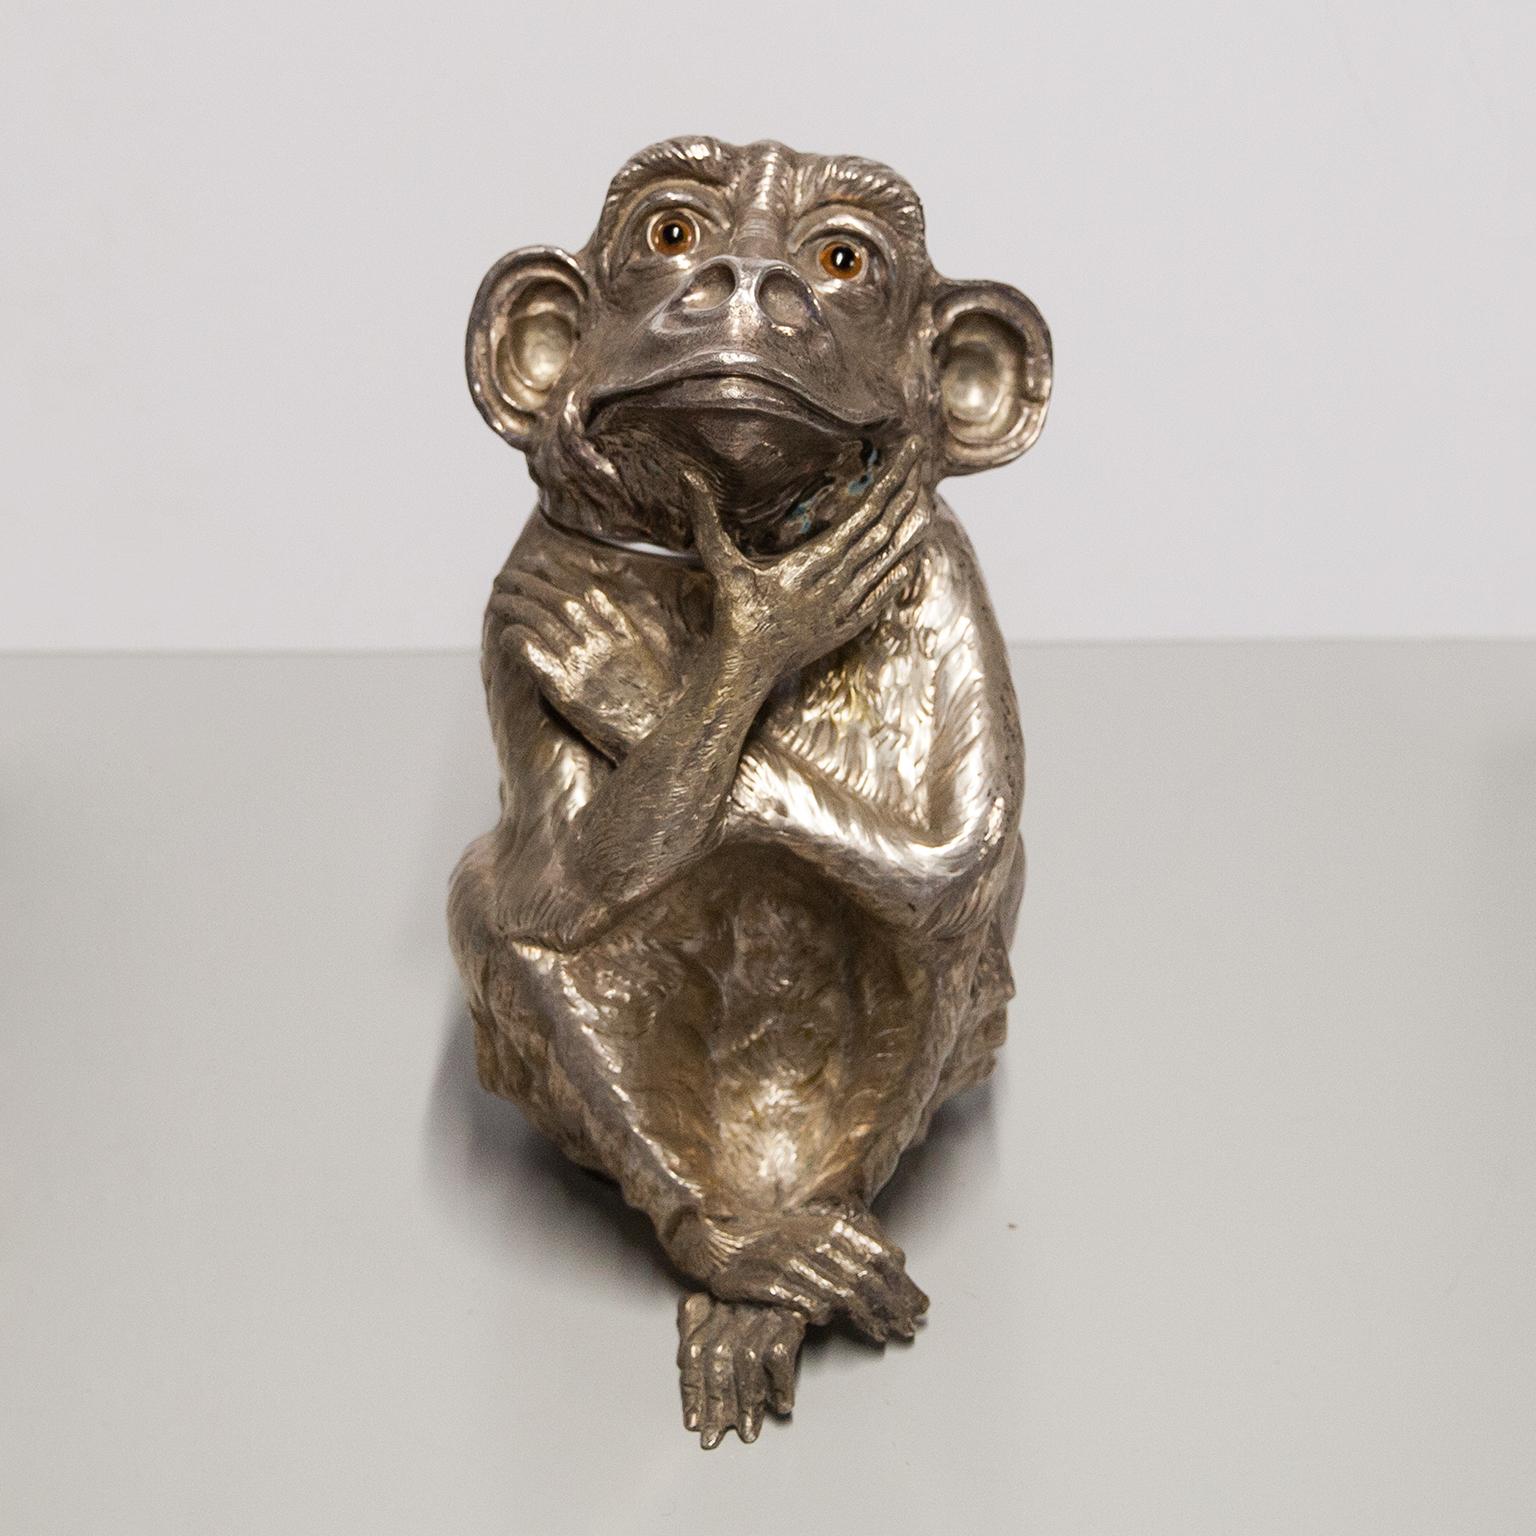 La rare et célèbre sculpture vintage de Franco Lapinis, intitulée Monkey, est entièrement réalisée en métal plaqué argent et sa surface est légèrement texturée pour lui donner un aspect organique. L'intérieur est recouvert d'une nouvelle couche de